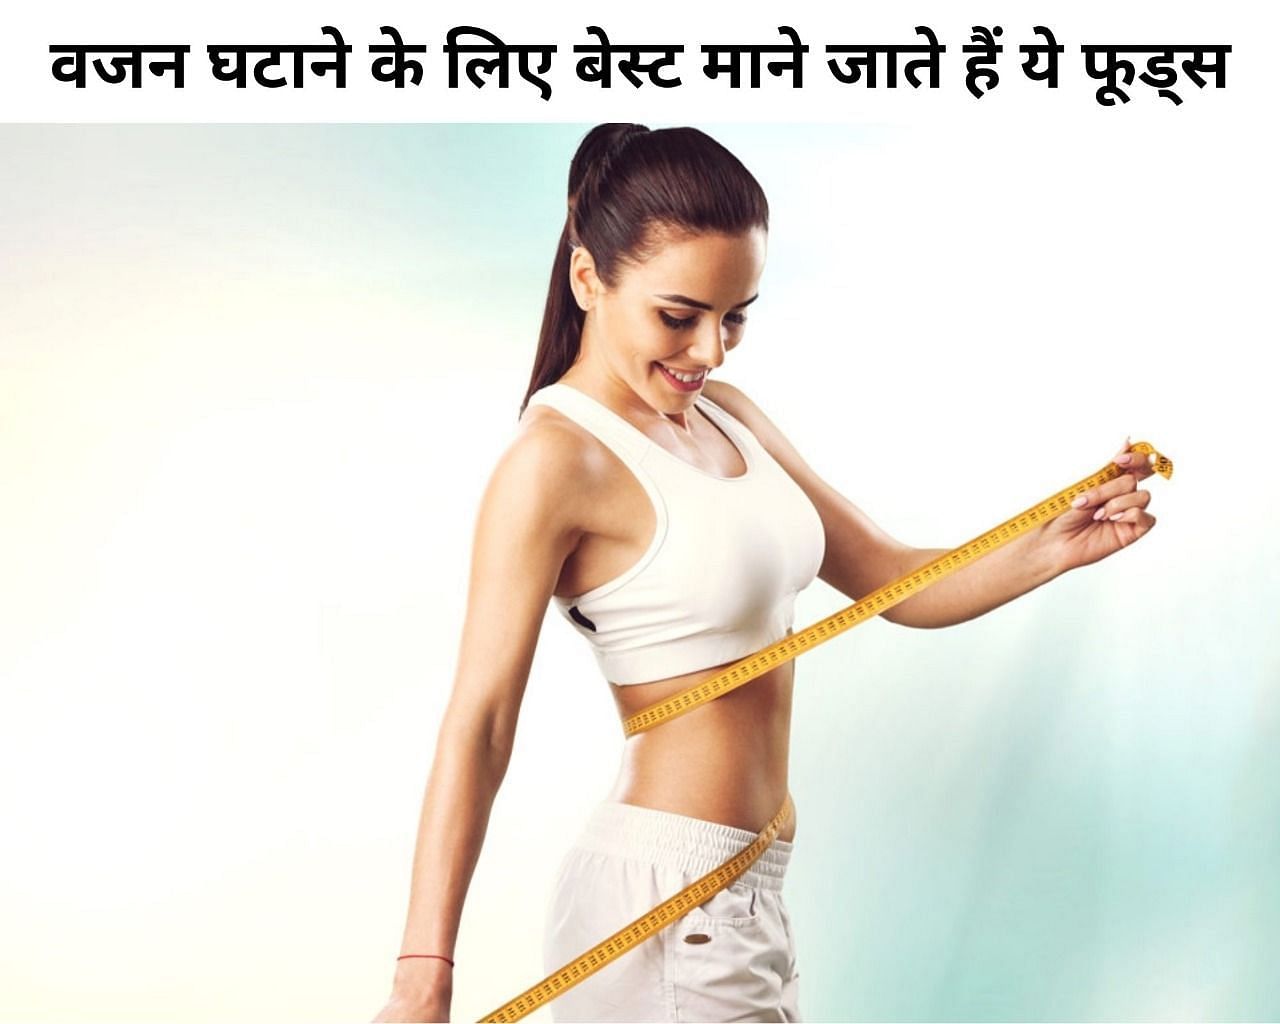 वजन घटाने के लिए बेस्ट माने जाते हैं ये फूड्स (फोटो - sportskeeda hindi)